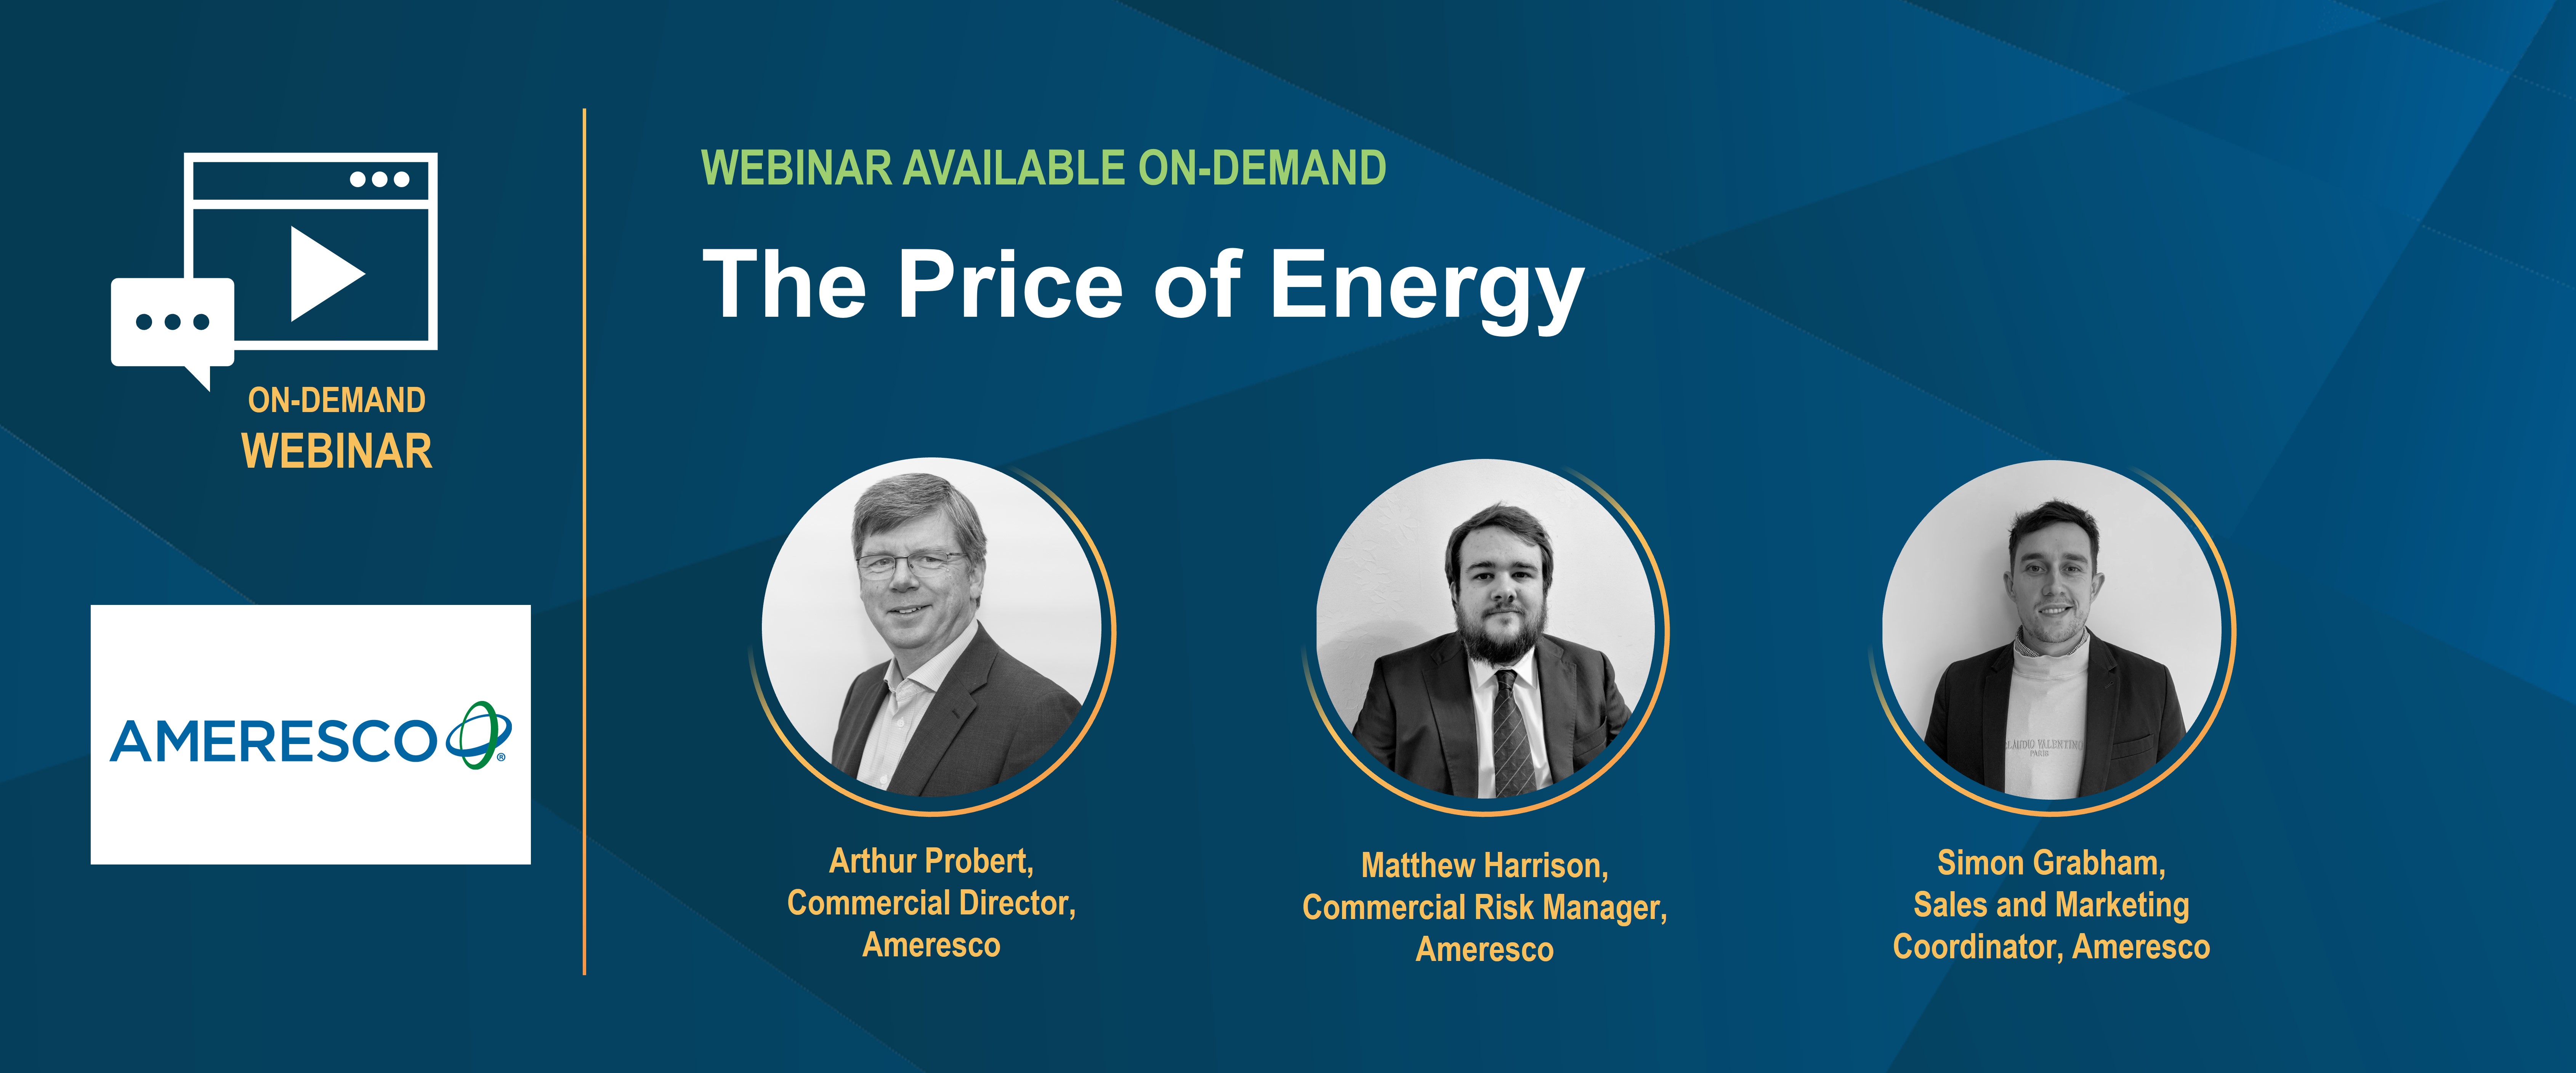 Webinar Full Promo Image - The Price of Energy UK v4